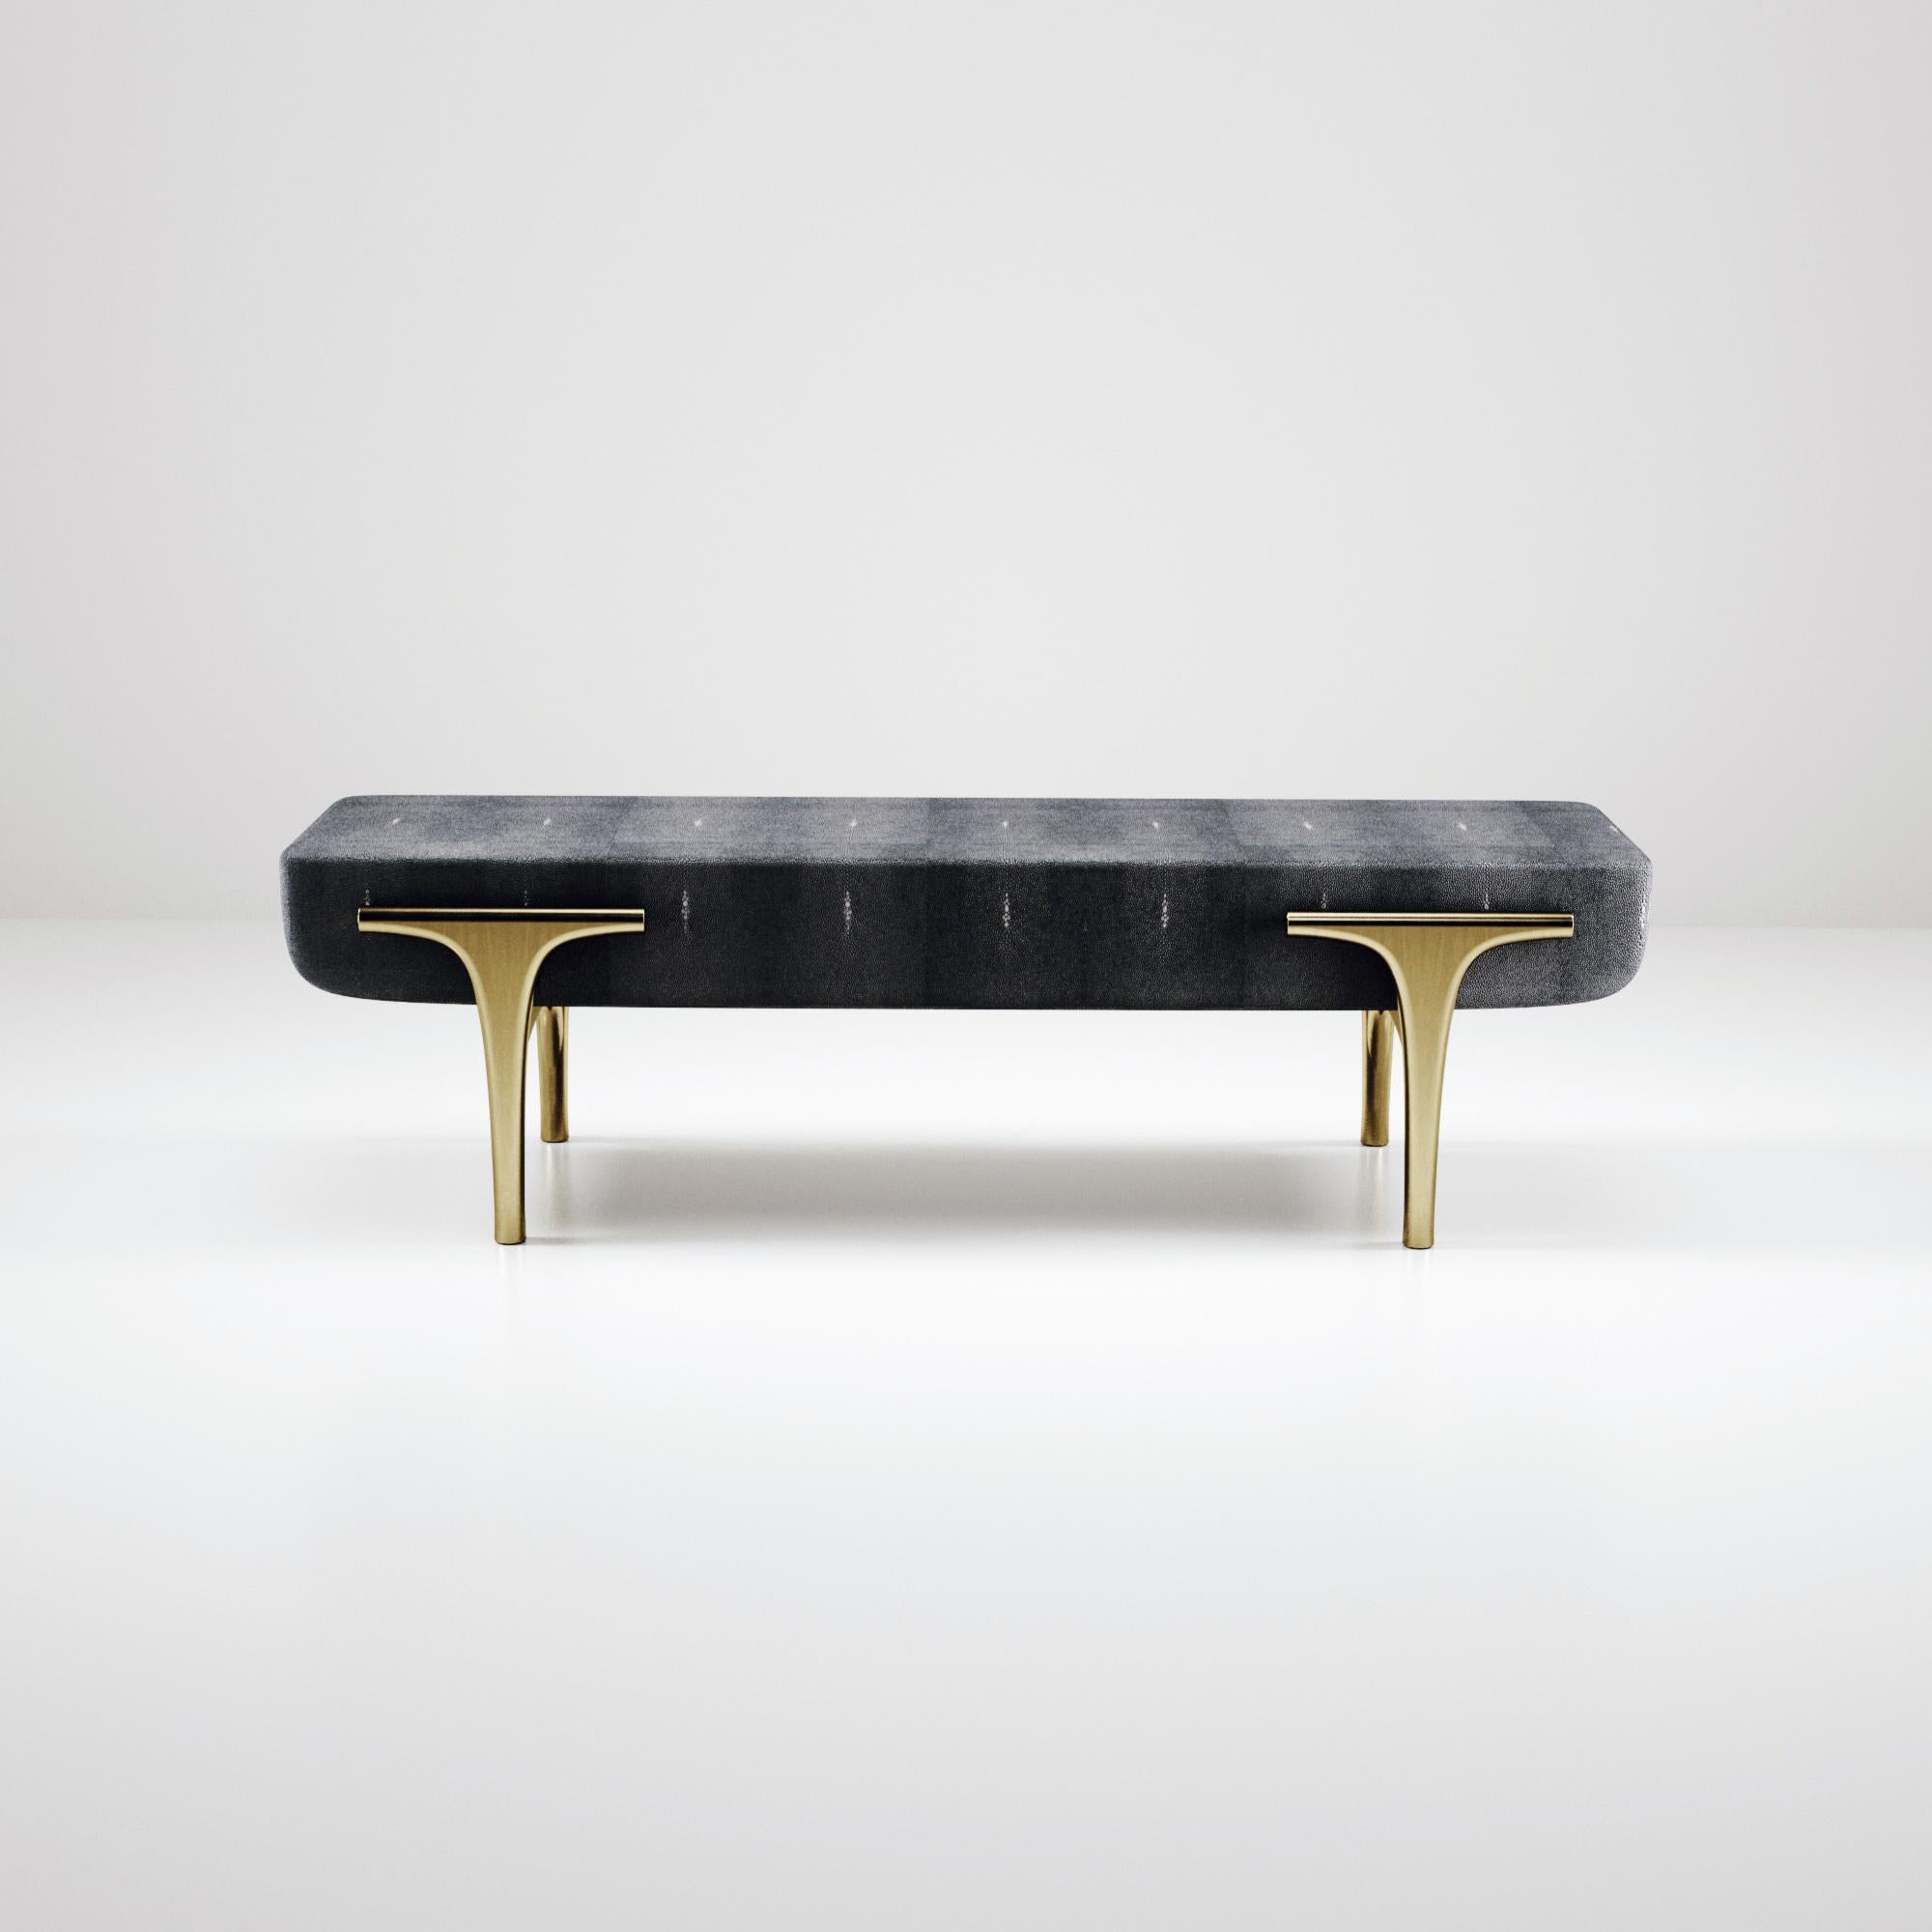 Die Bank Ramo von R & Y Augousti ist ein elegantes und vielseitiges Möbelstück. Die Einlegearbeit aus schwarzem Chagrin sorgt für Komfort, während die einzigartige Ästhetik des Rahmens und der Details aus Messing in Bronze-Patina erhalten bleibt.